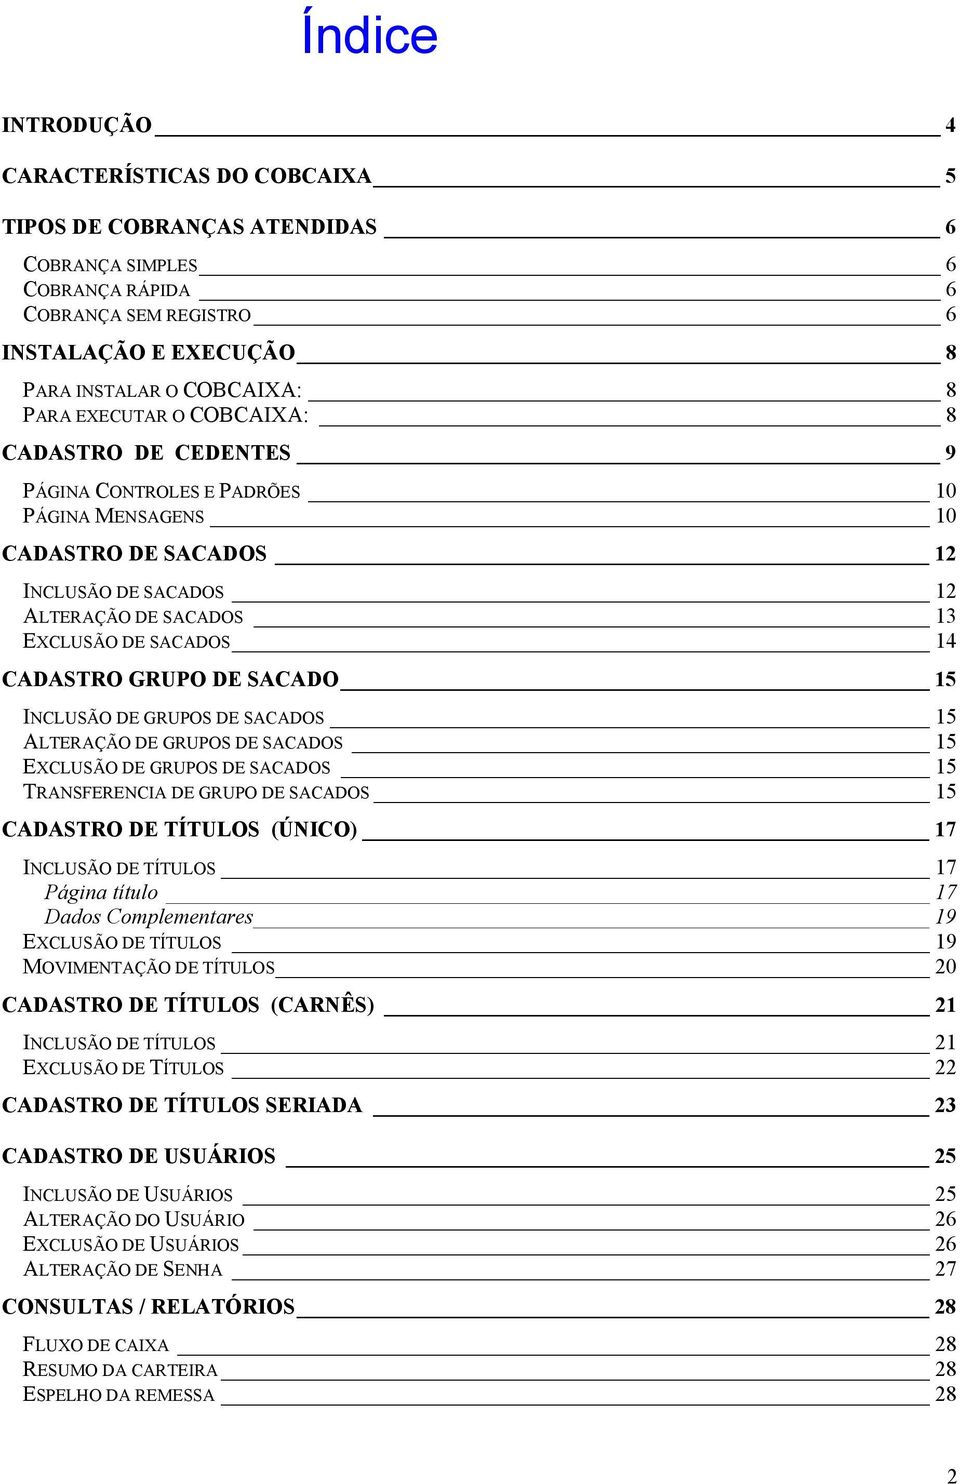 GRUPO DE SACADO 15 INCLUSÃO DE GRUPOS DE SACADOS 15 ALTERAÇÃO DE GRUPOS DE SACADOS 15 EXCLUSÃO DE GRUPOS DE SACADOS 15 TRANSFERENCIA DE GRUPO DE SACADOS 15 CADASTRO DE TÍTULOS (ÚNICO) 17 INCLUSÃO DE